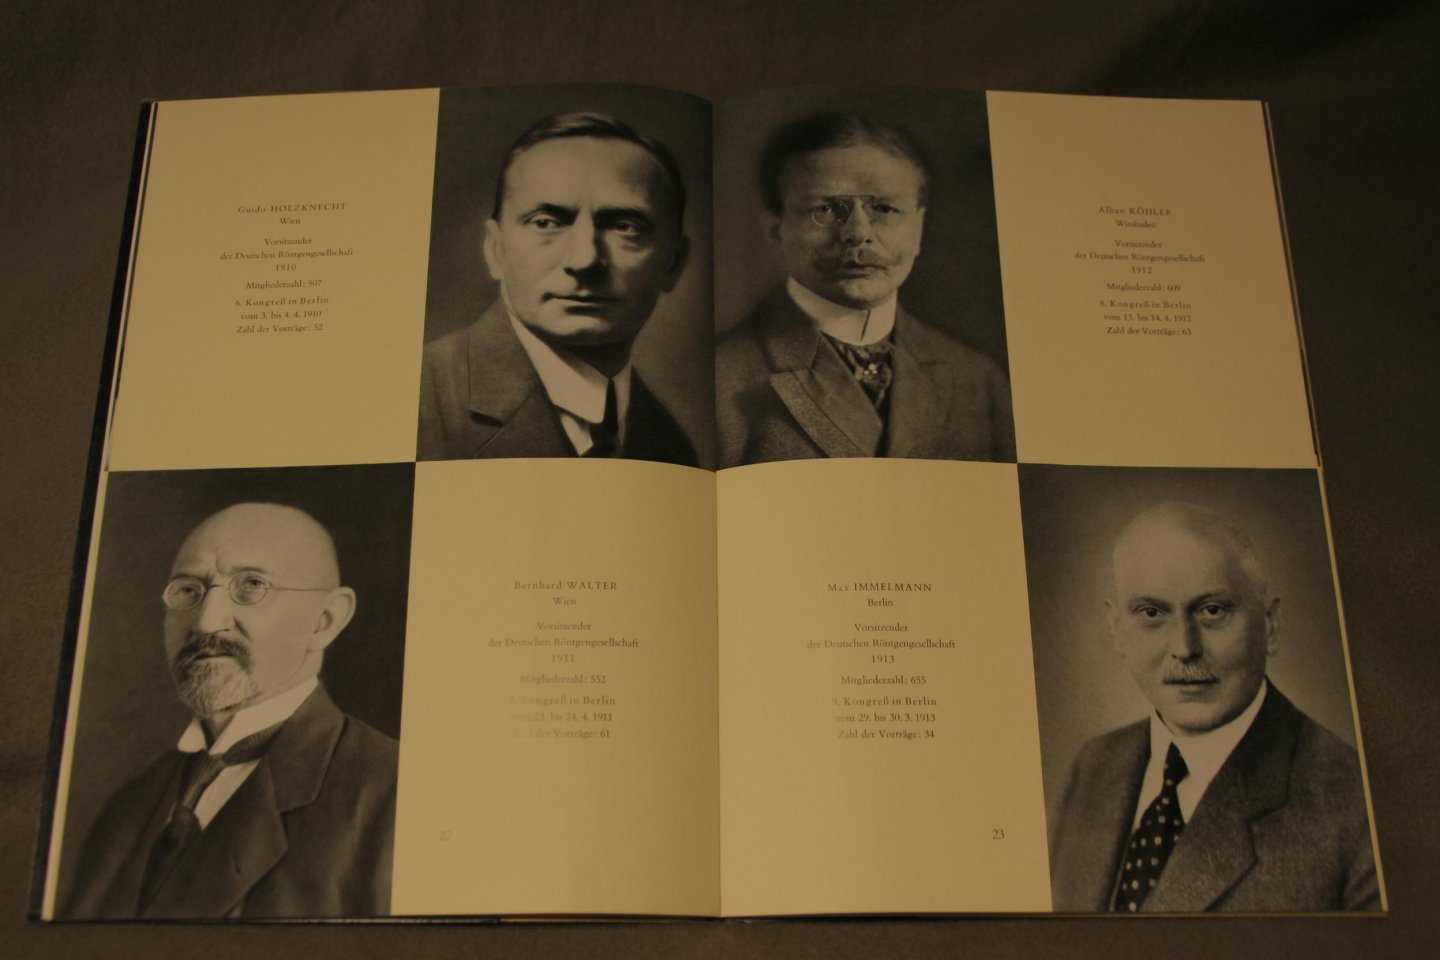 Grössel, Marten - Festschrift 50 Jahre Deutsche Röntgengesellschaft 1905-1950